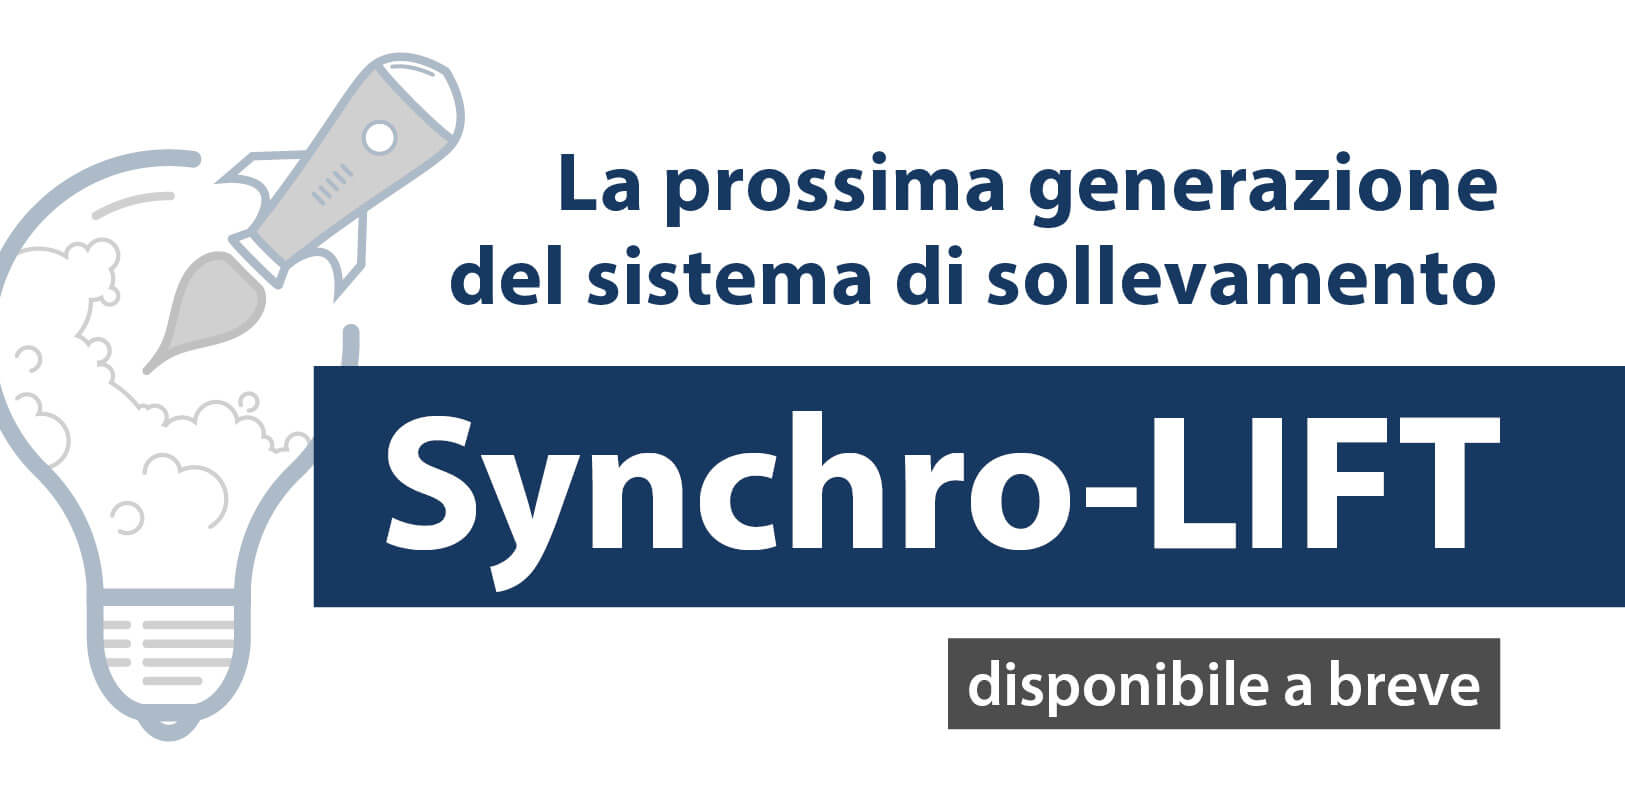 Synchro-LIFT: La prossima generazione – Teaser